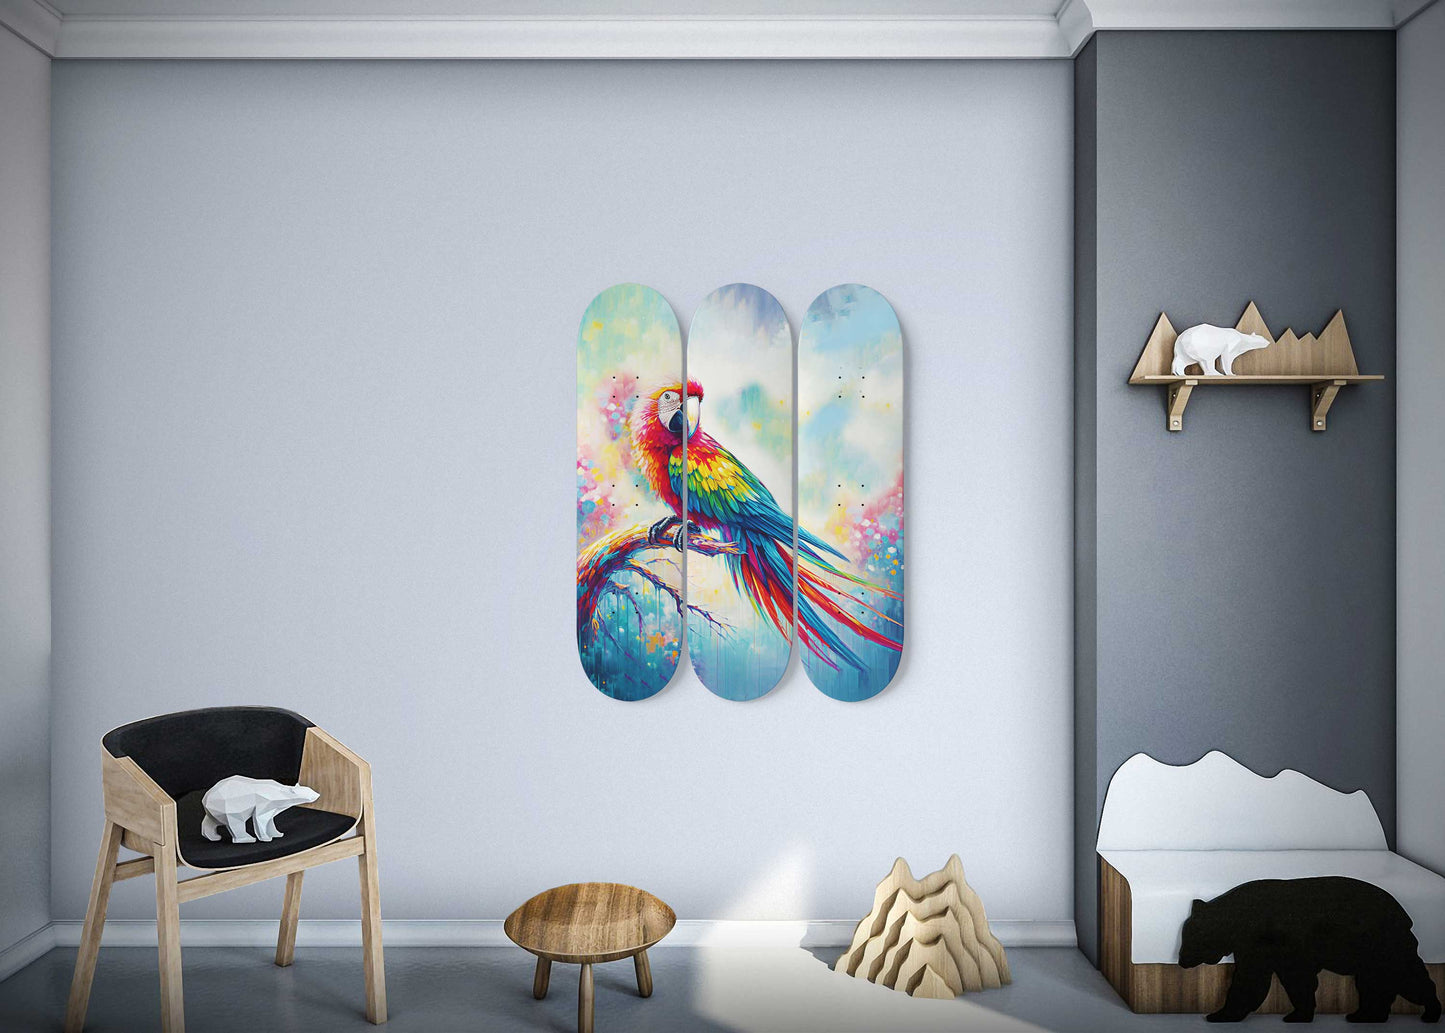 Beautiful Parrot #1 3-Deck Skateboard Wall Art